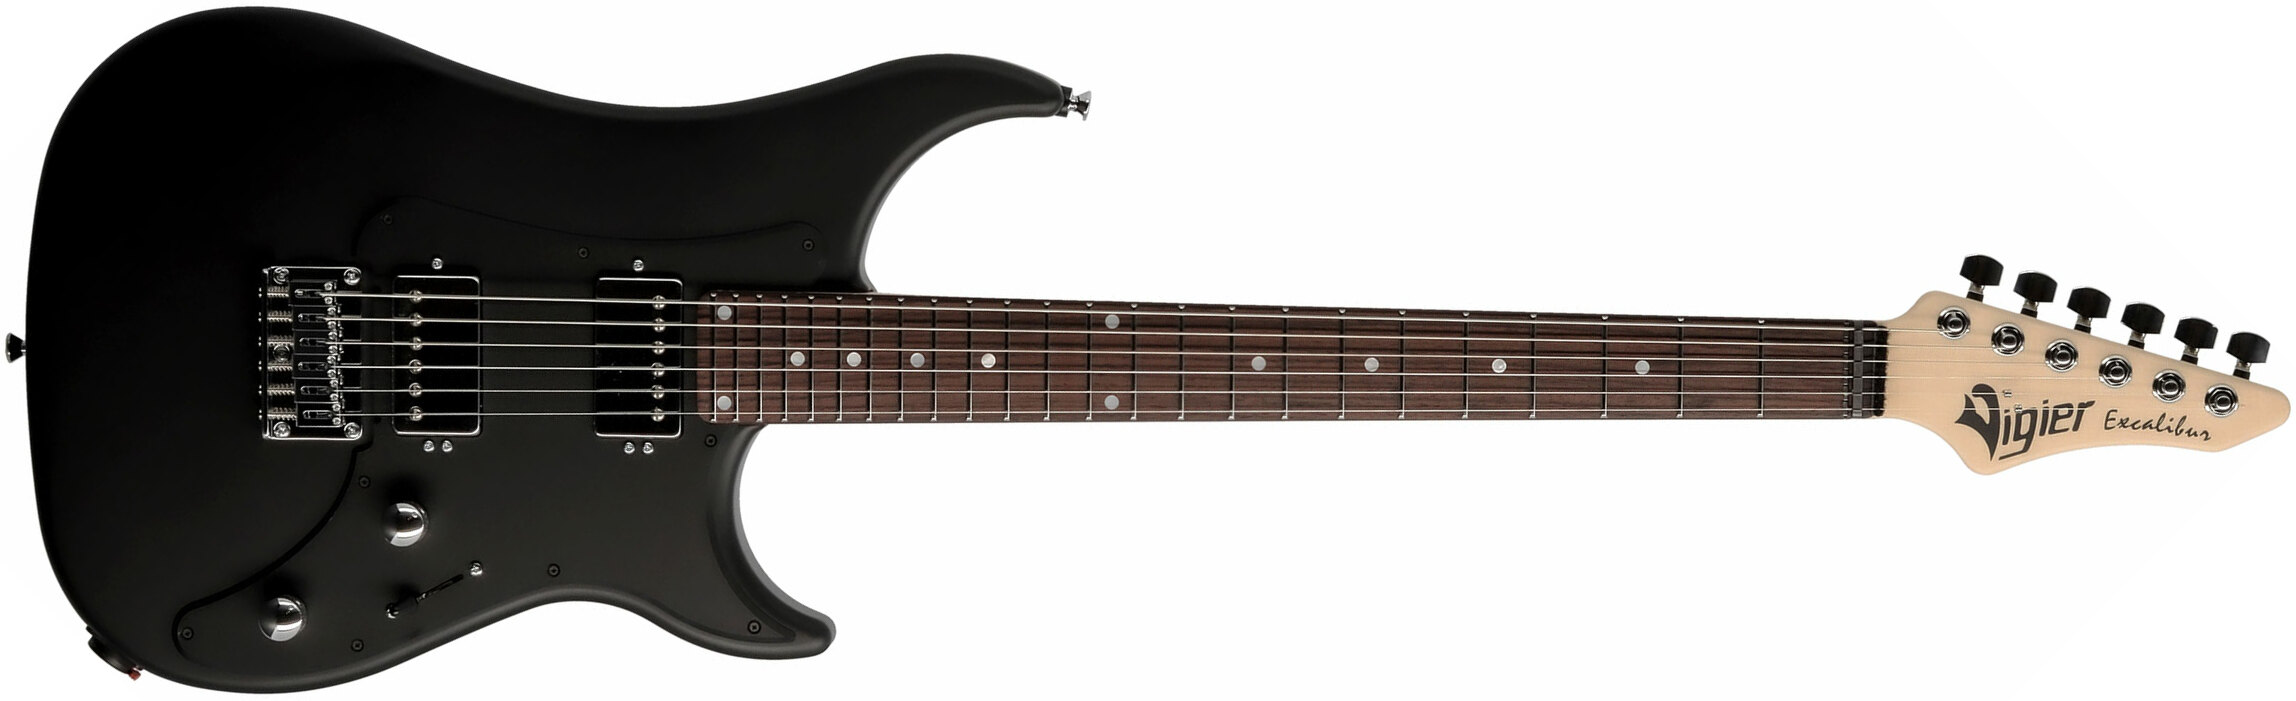 Vigier Excalibur Indus 2h Ht Rw - Black Matte - Double cut electric guitar - Main picture